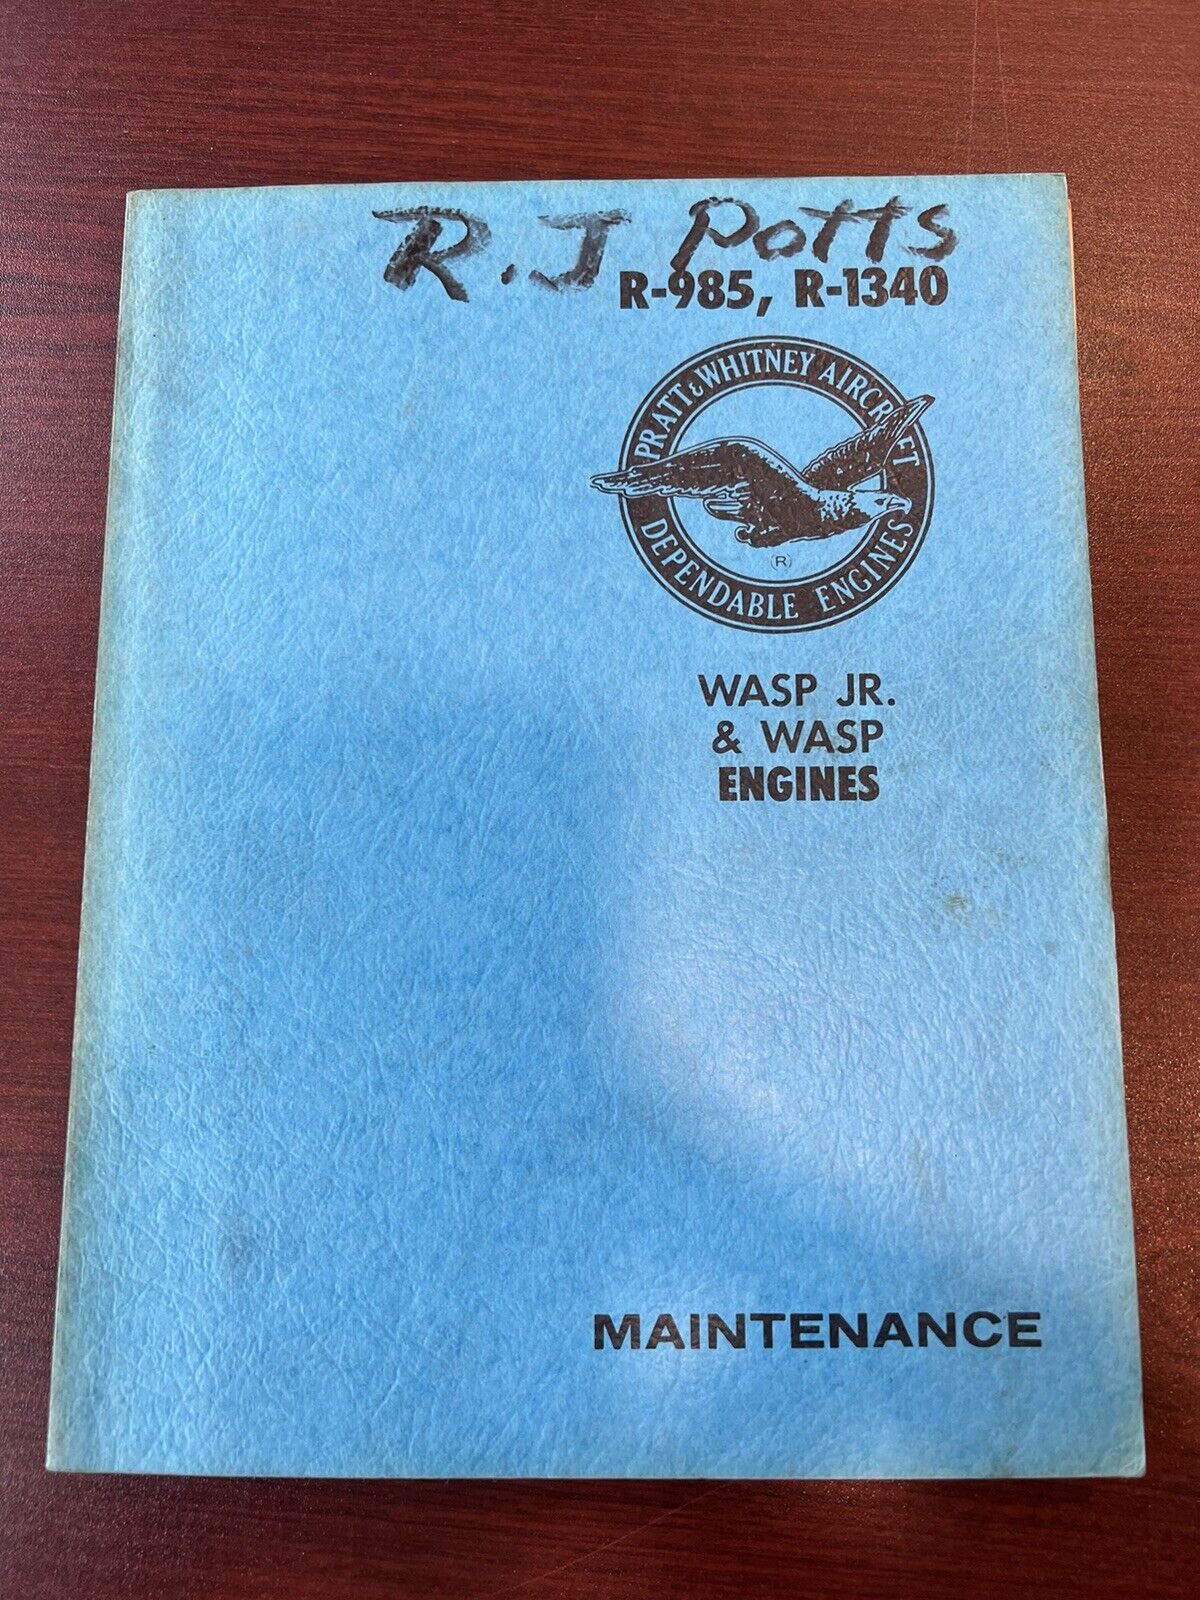 P&W Aircraft: R-985, R-1340 (Wasp Jr. & Wasp Engines) Maintenance Catalog